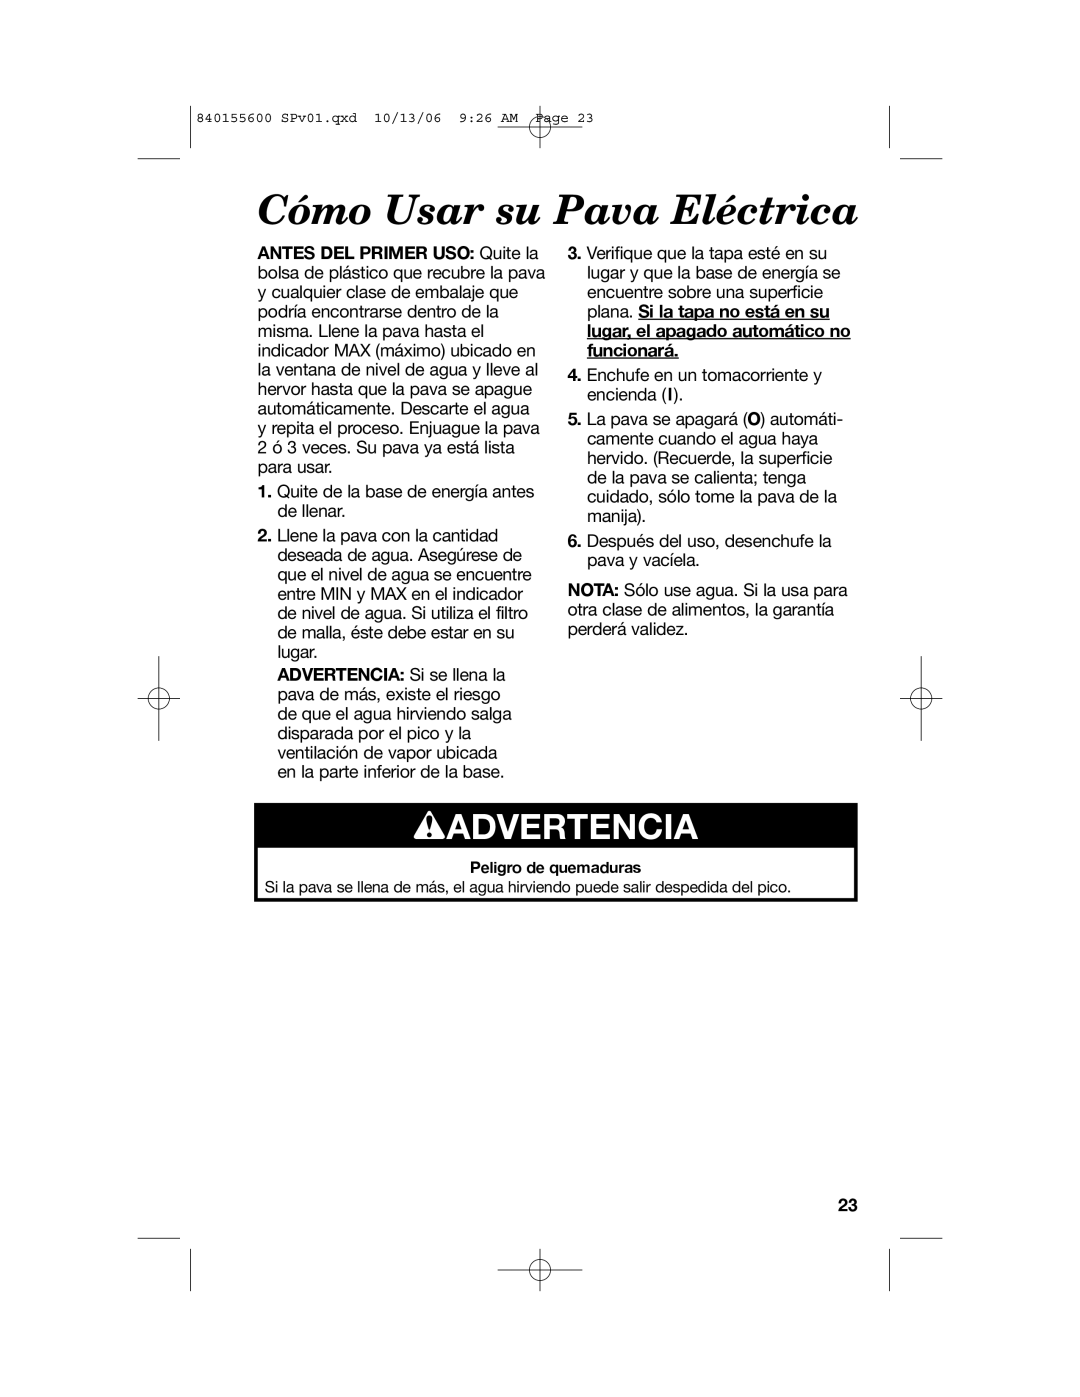 Hamilton Beach 40990 manual Cómo Usar su Pava Eléctrica, wADVERTENCIA 